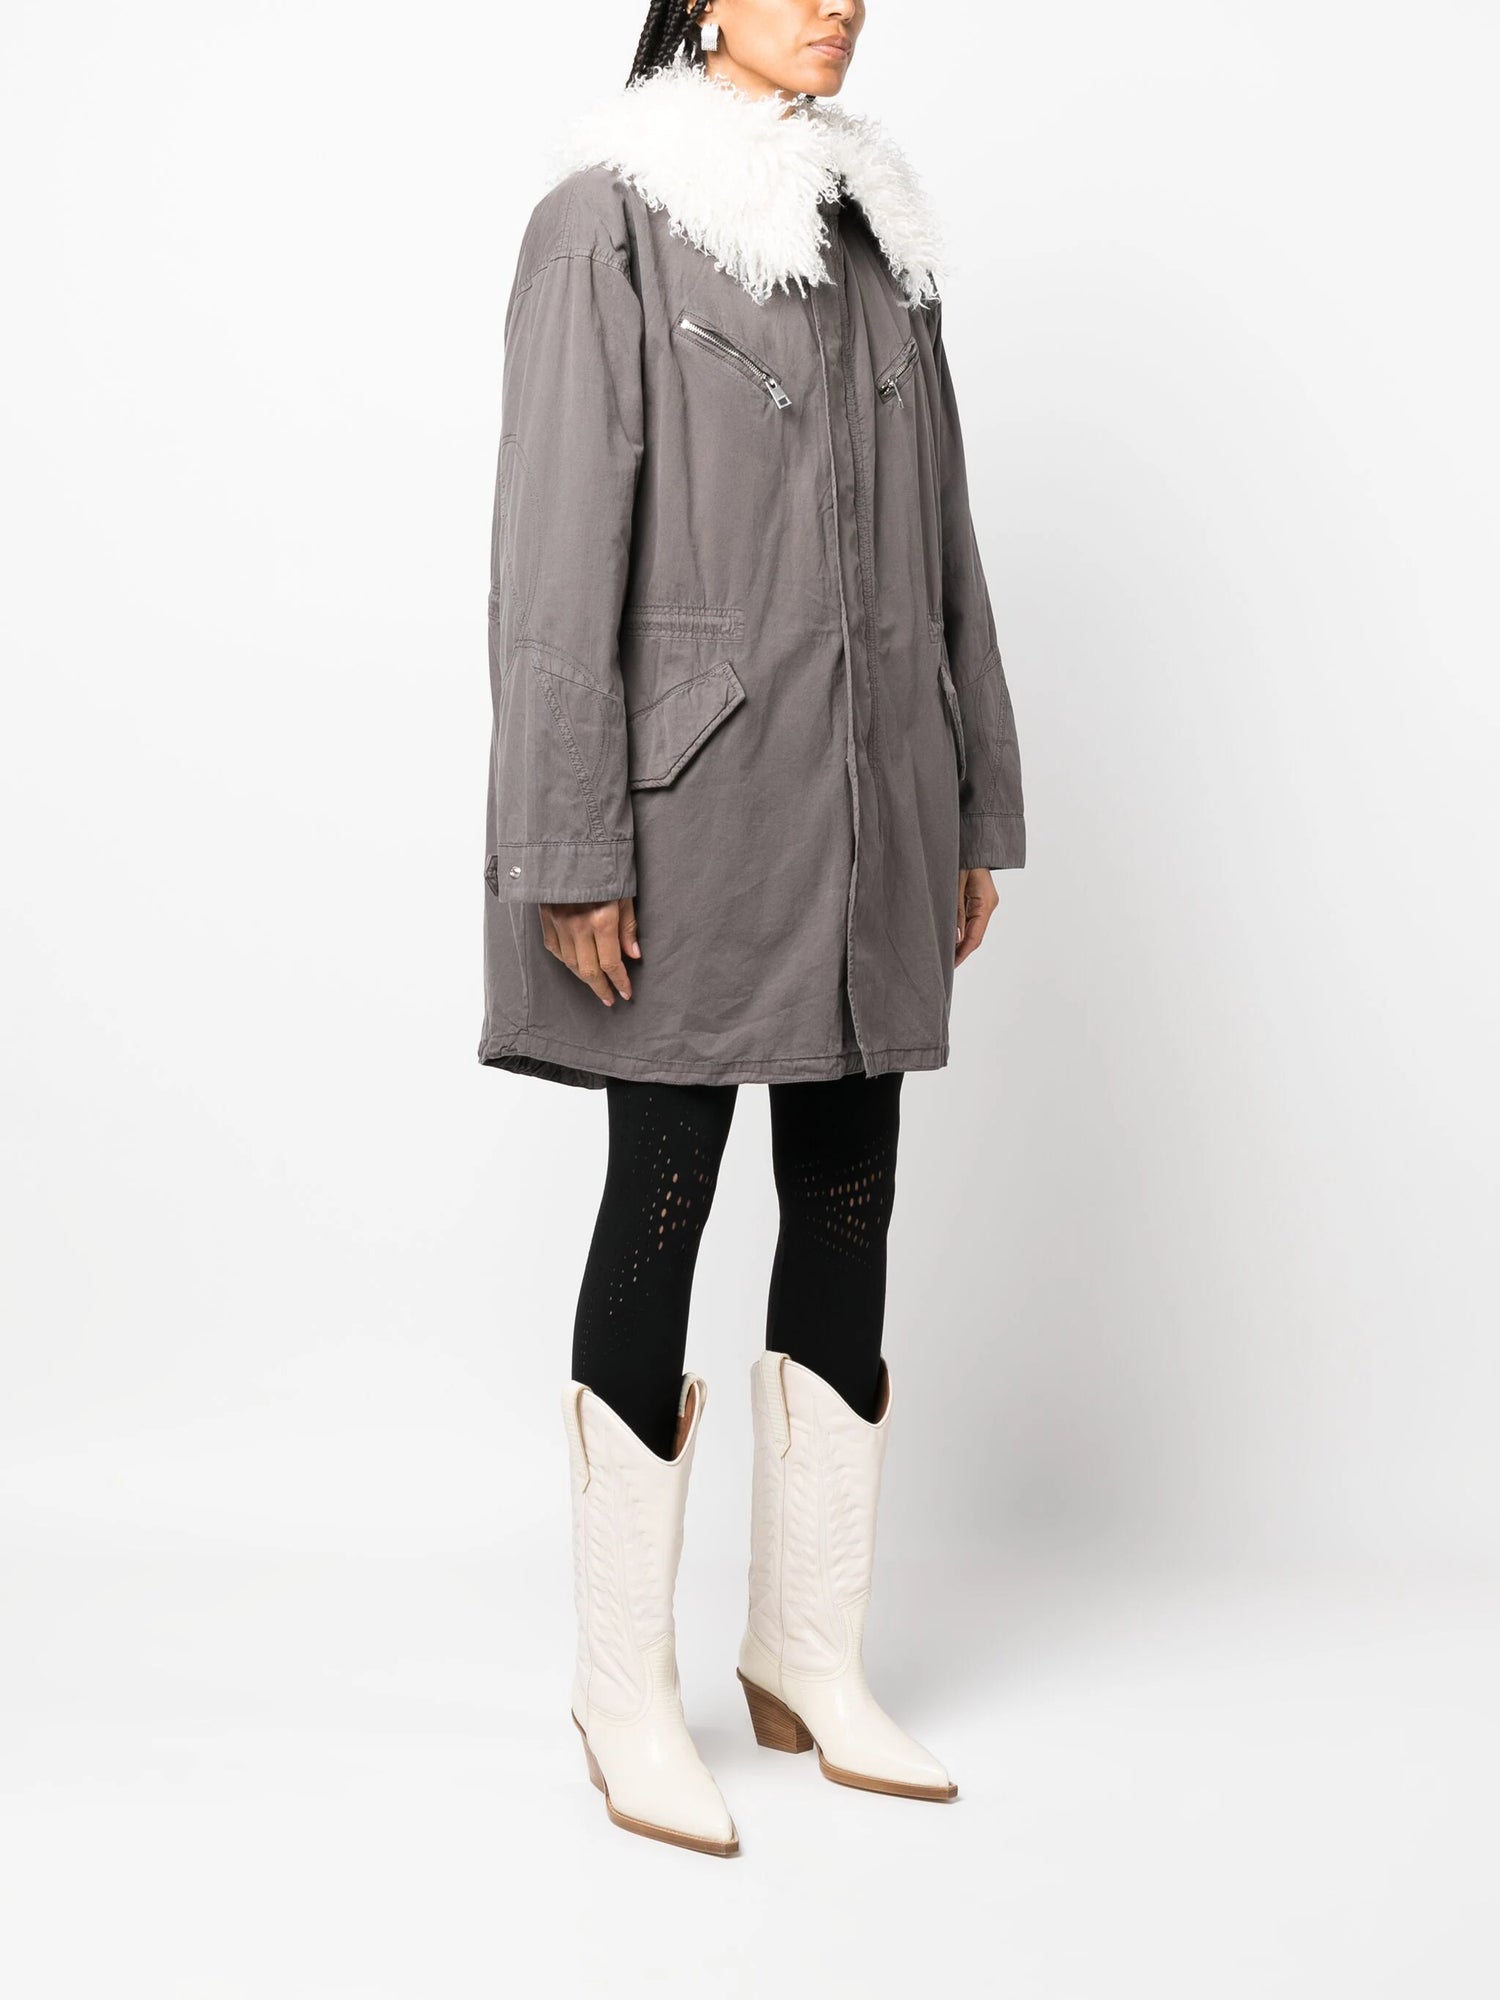 KIDEA COTON LAVE coat, grey